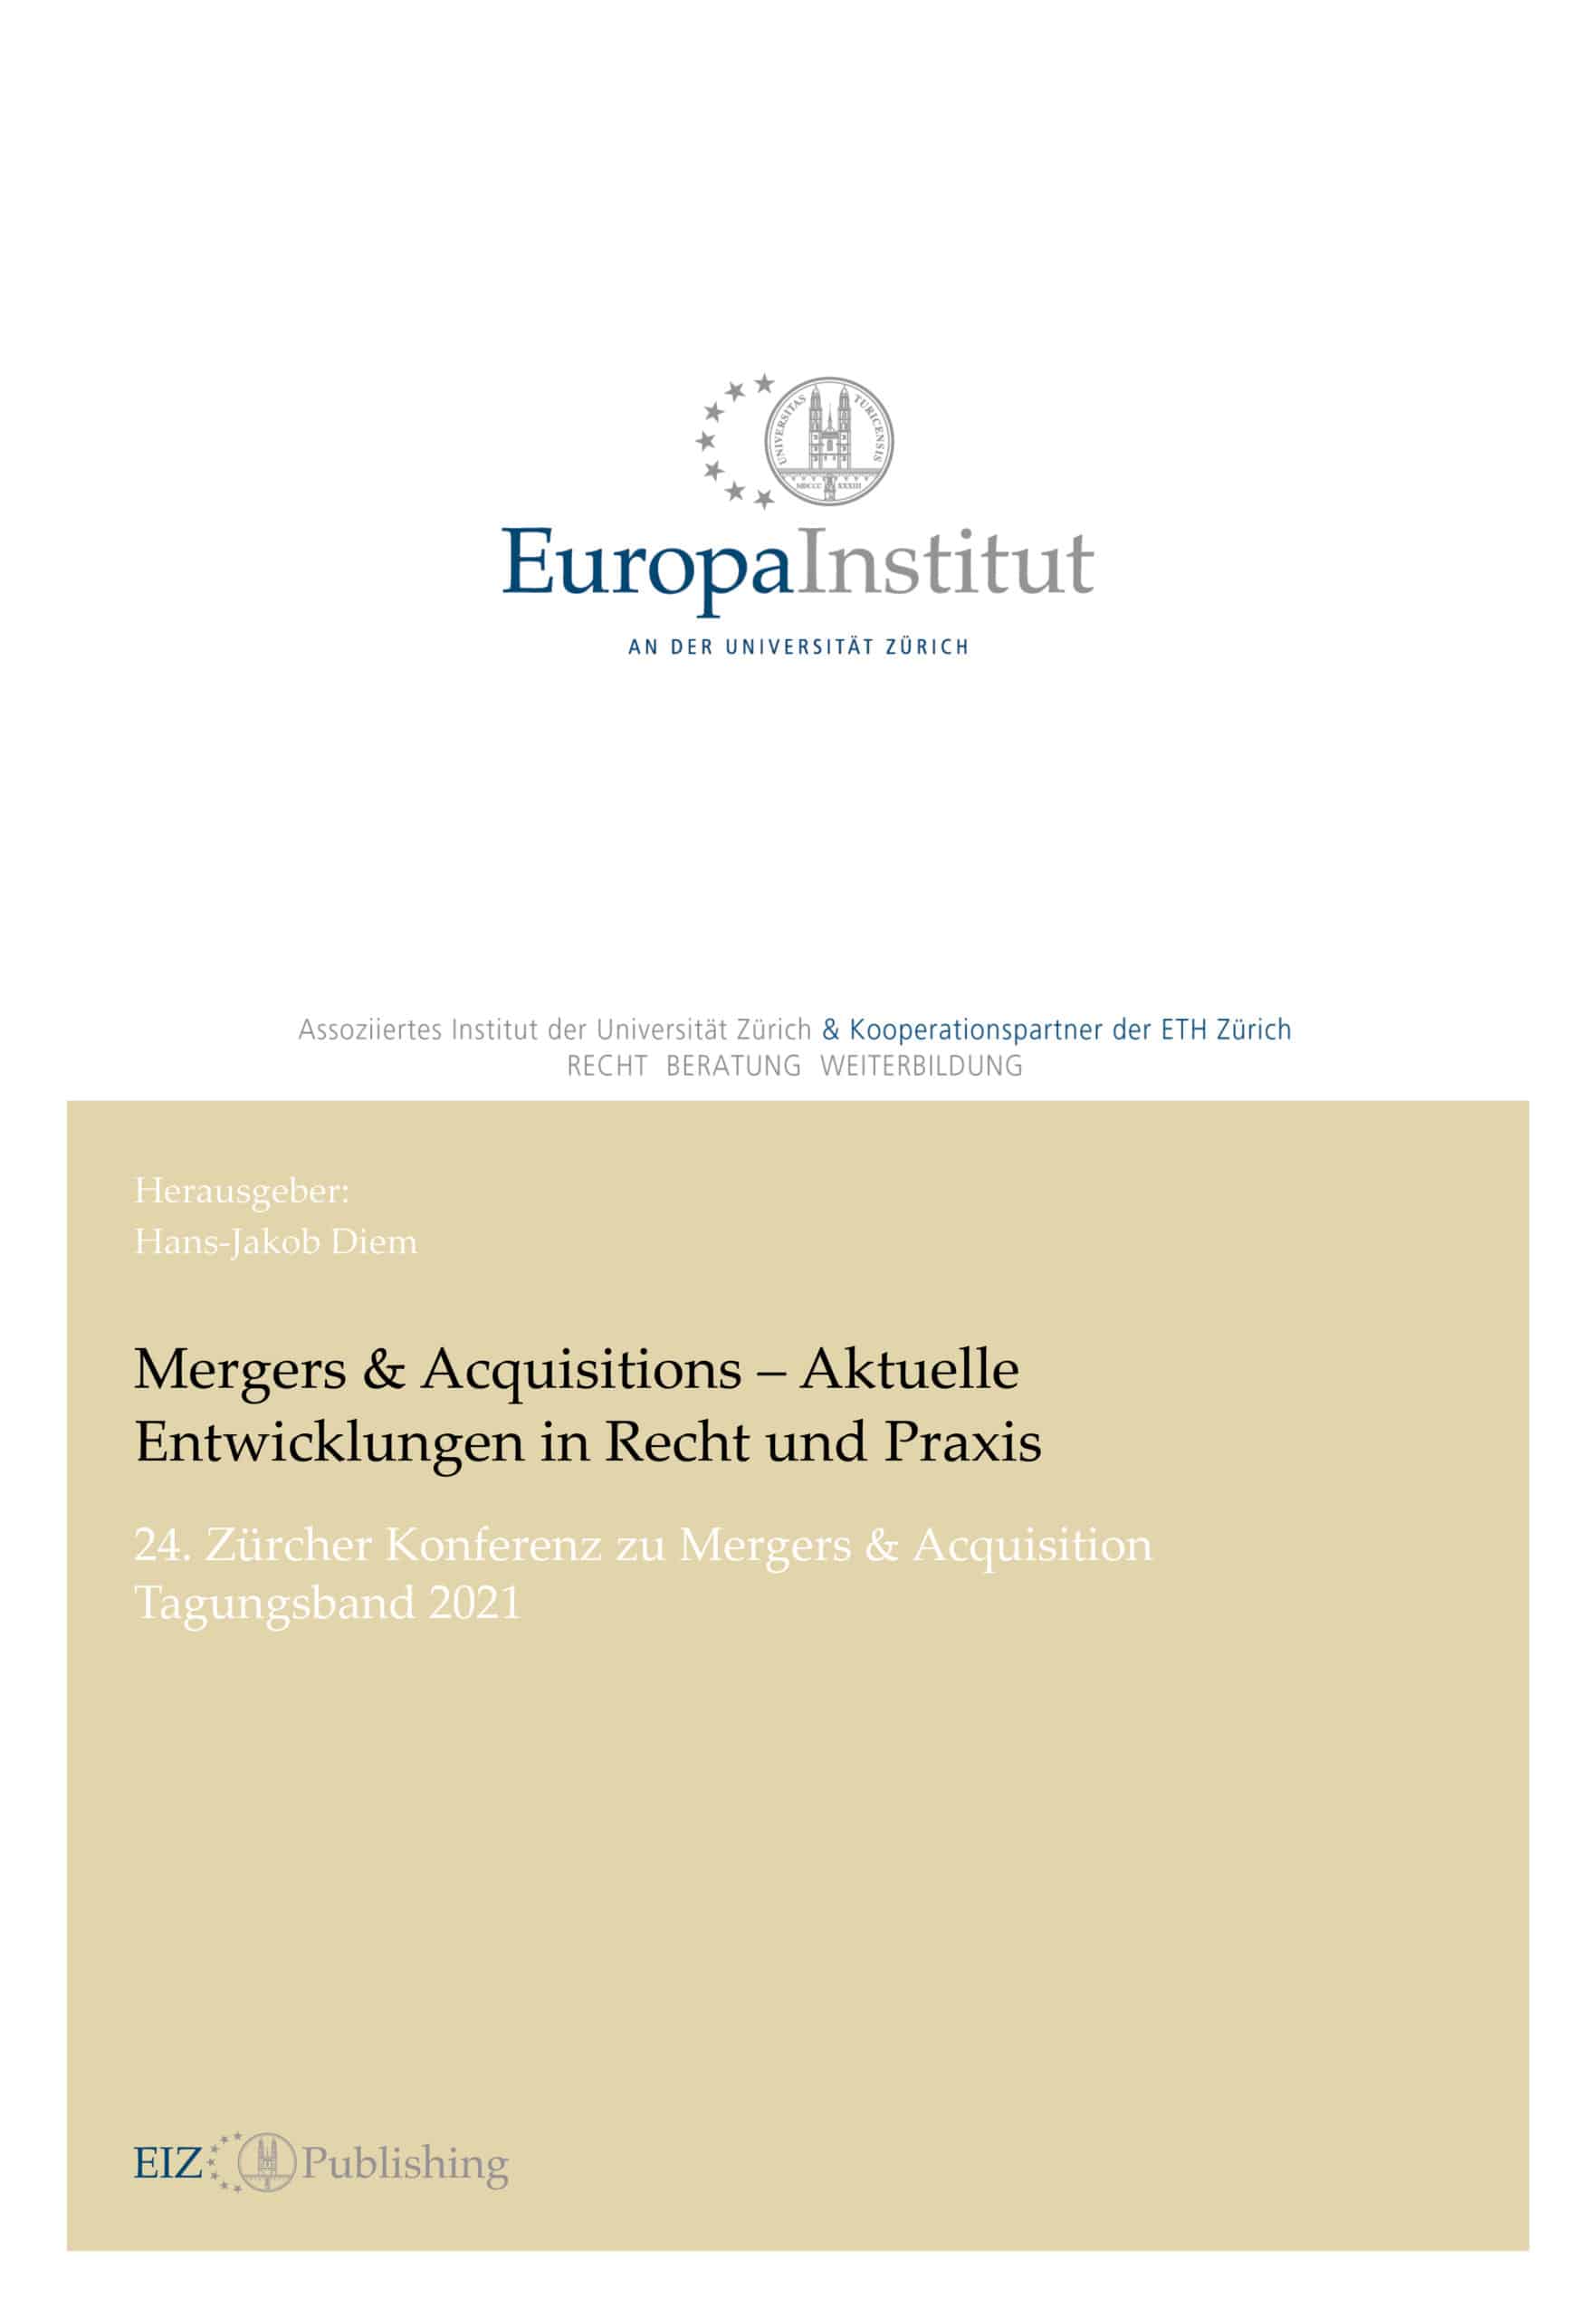 Mergers & Acquisitions – Aktuelle Entwicklungen in Recht und Praxis